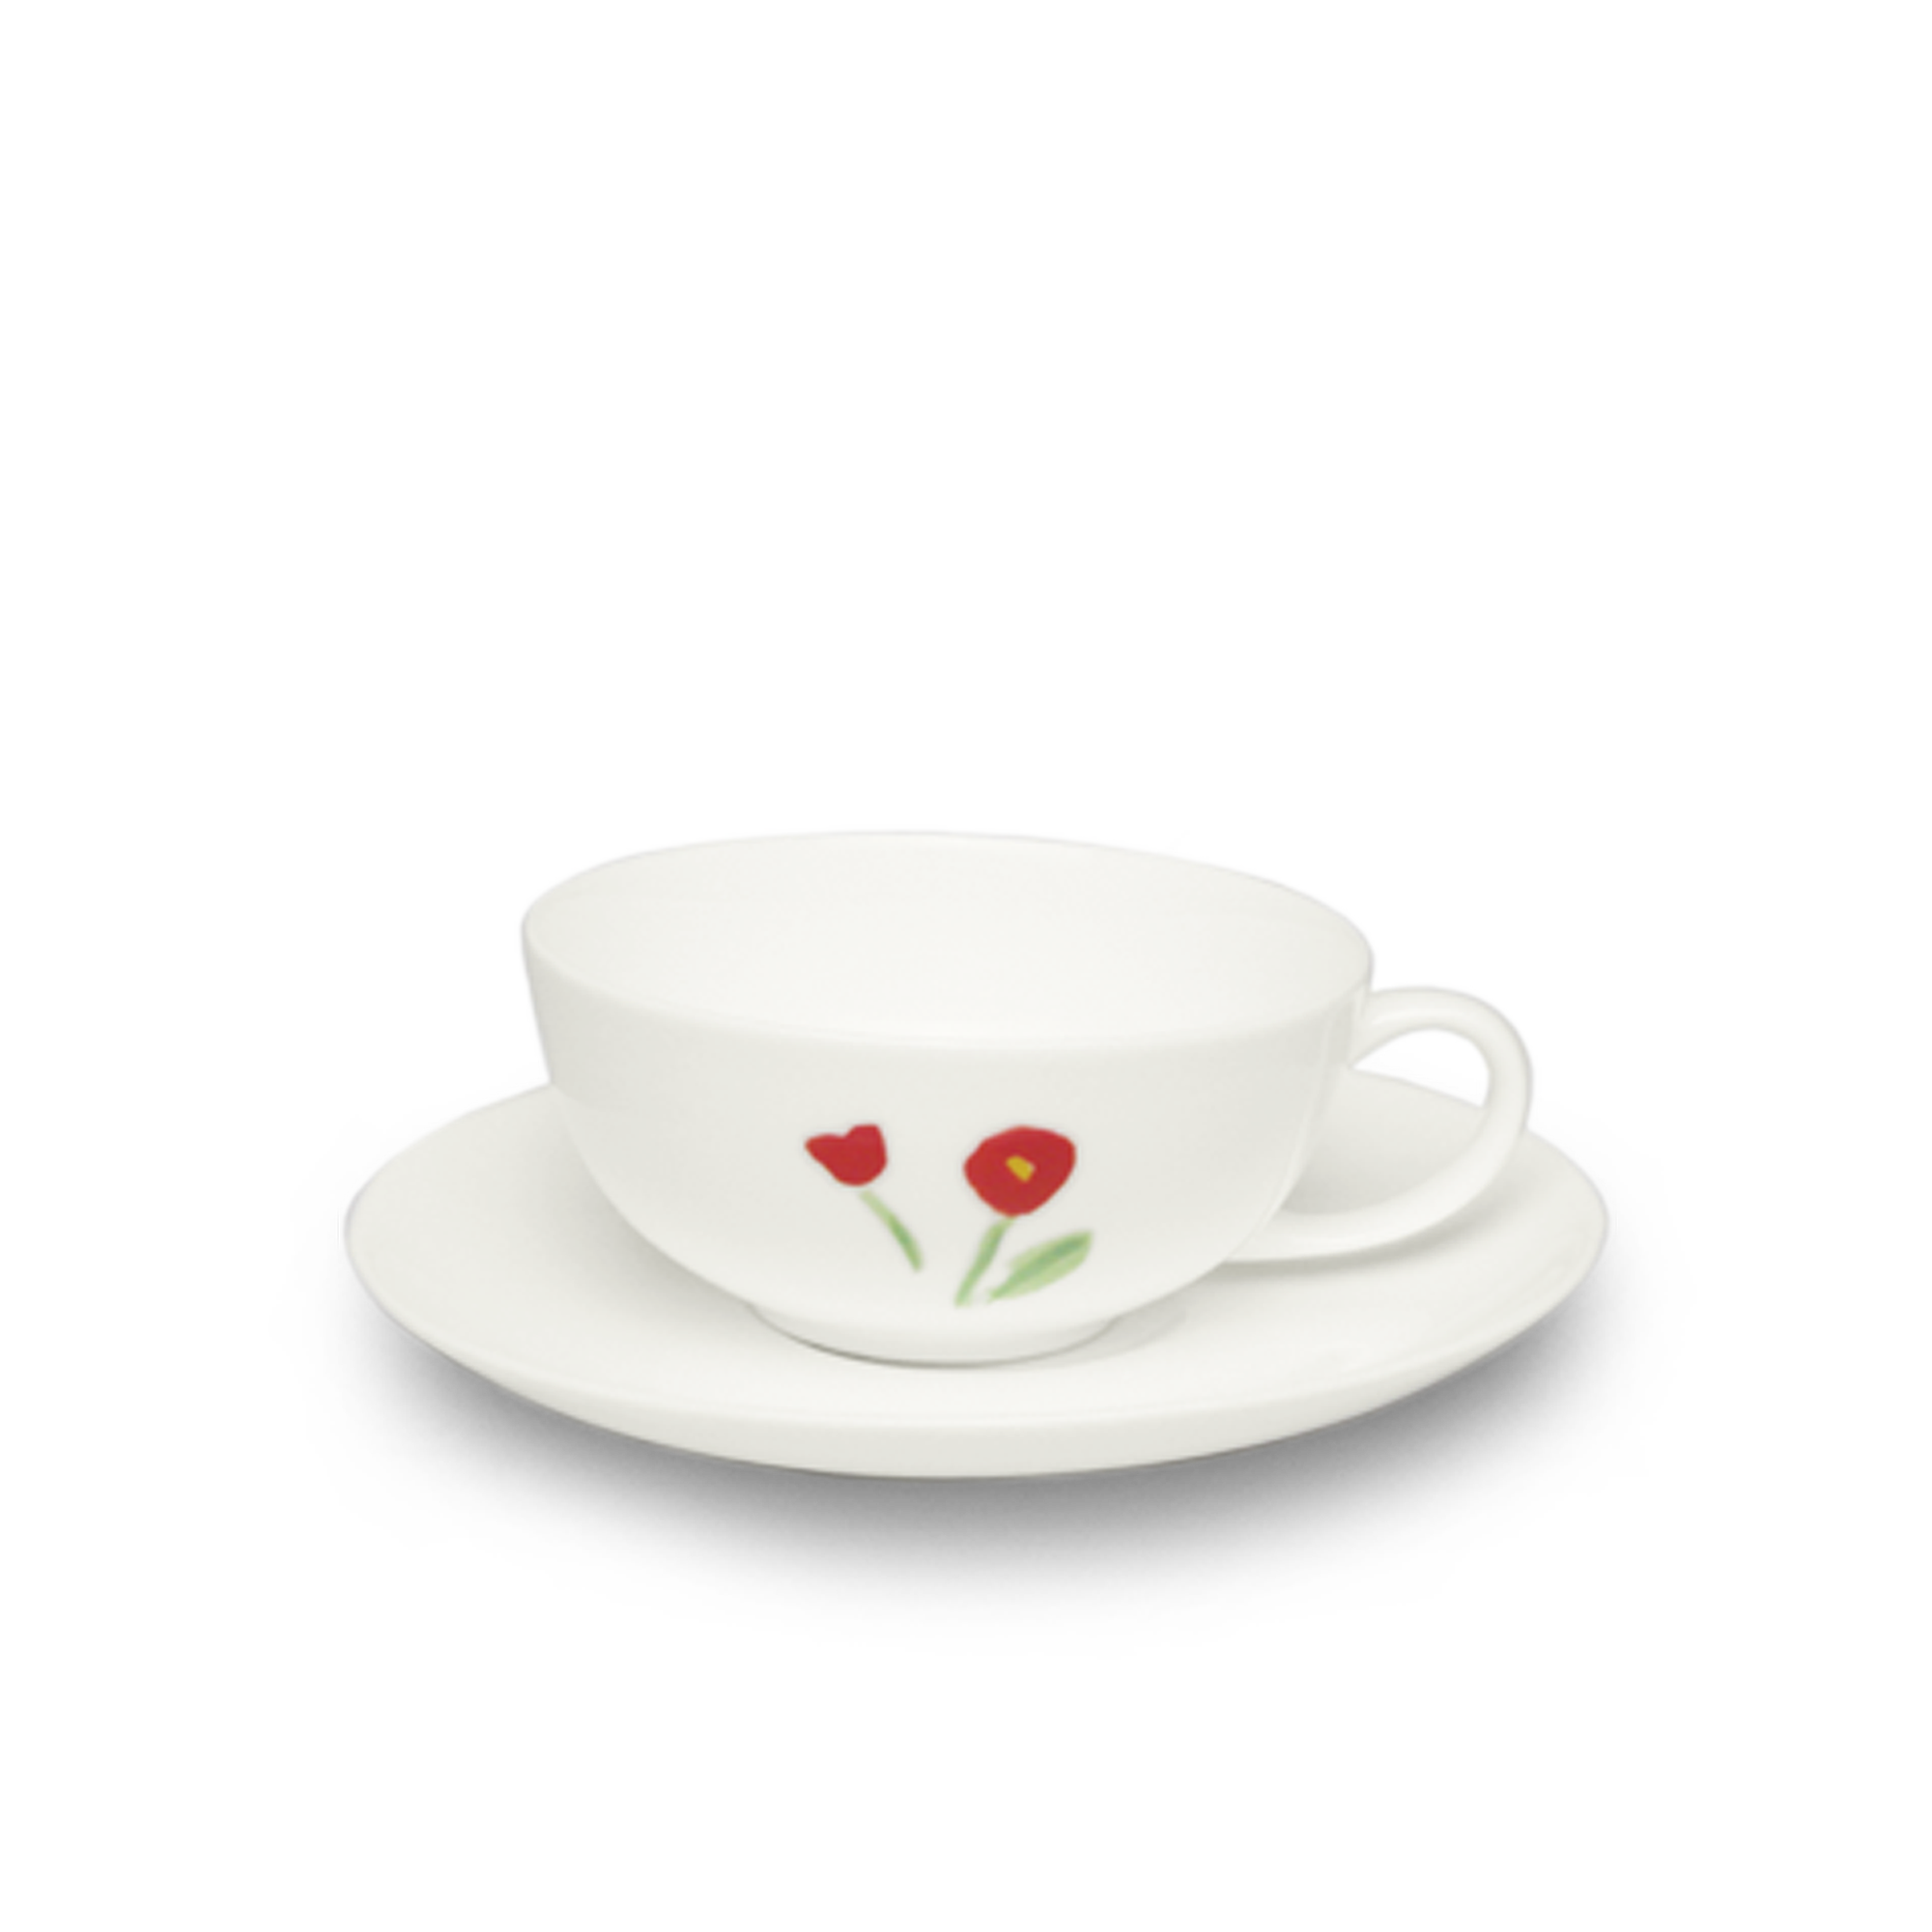 Impression red teacup